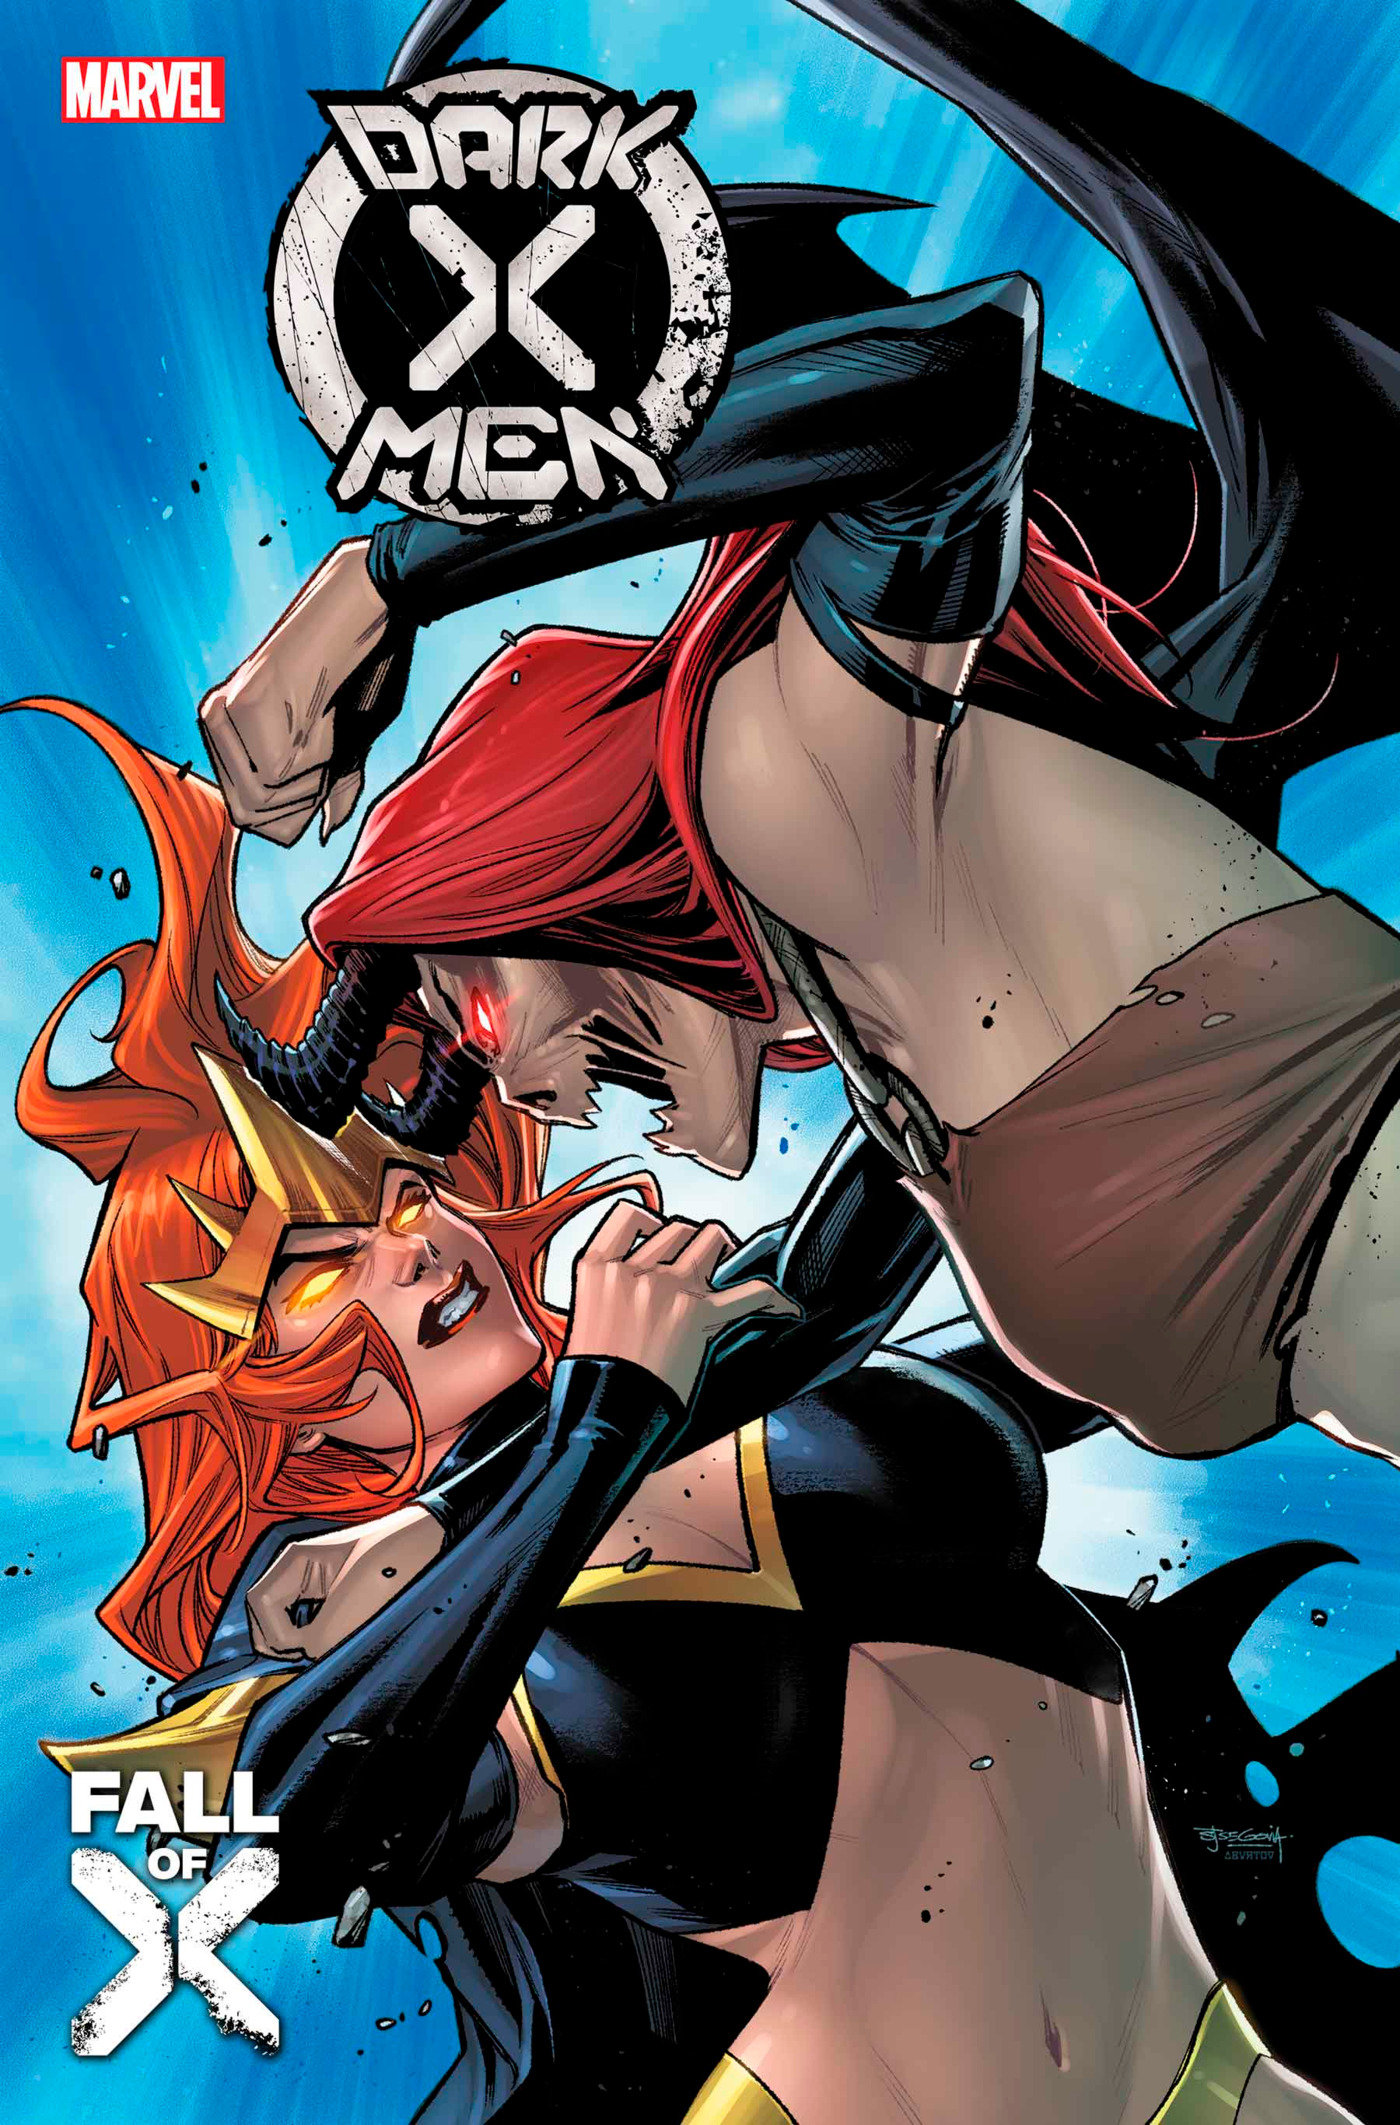 Dark X-Men #5 (Fall of the X-Men)